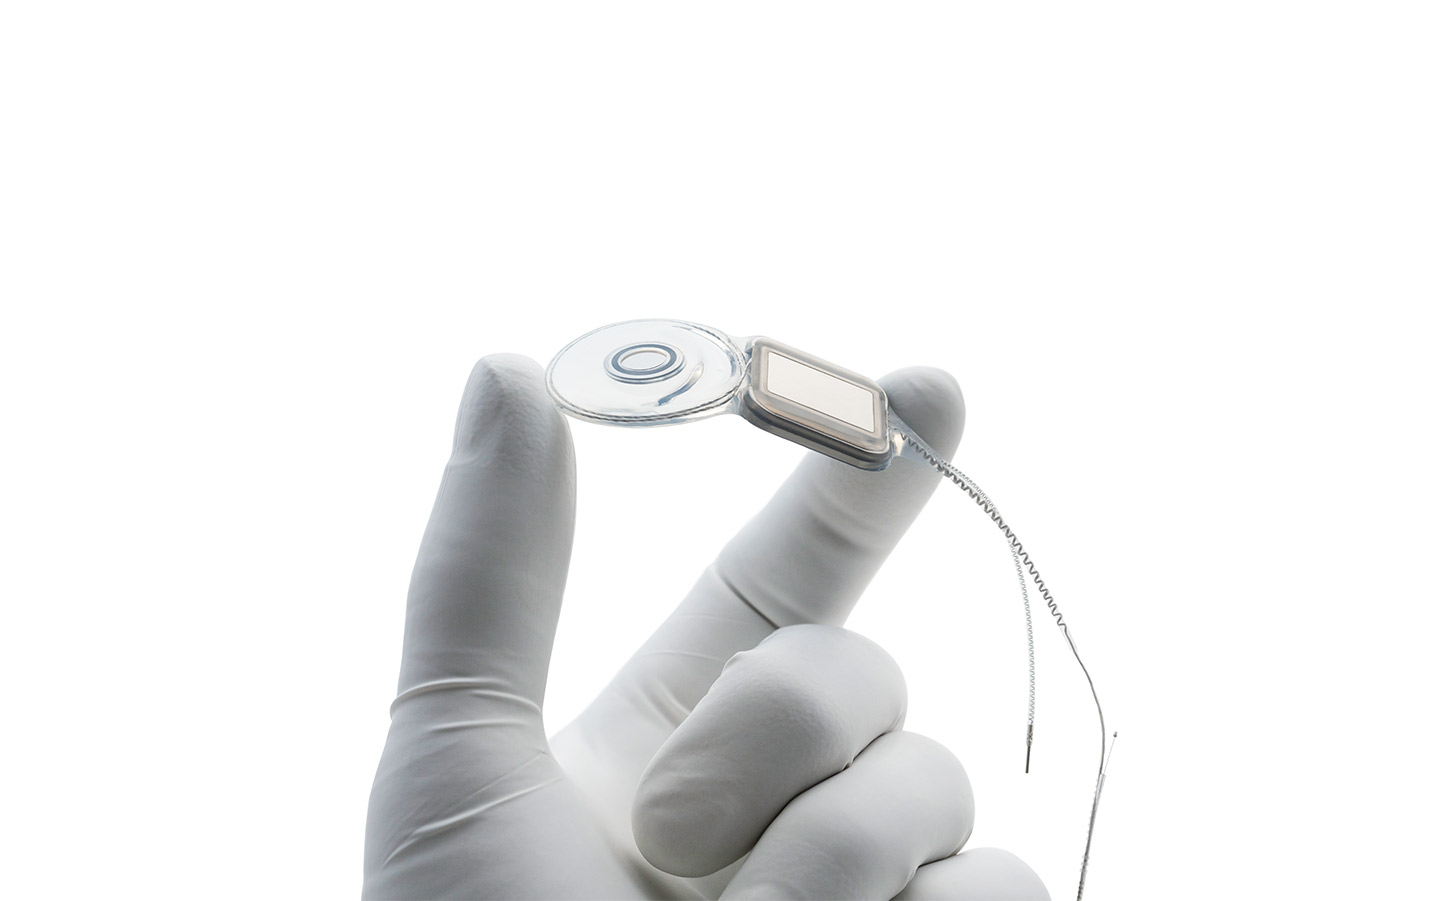 Chirurgova ruka v latexové rukavici drží implantát Nucleus